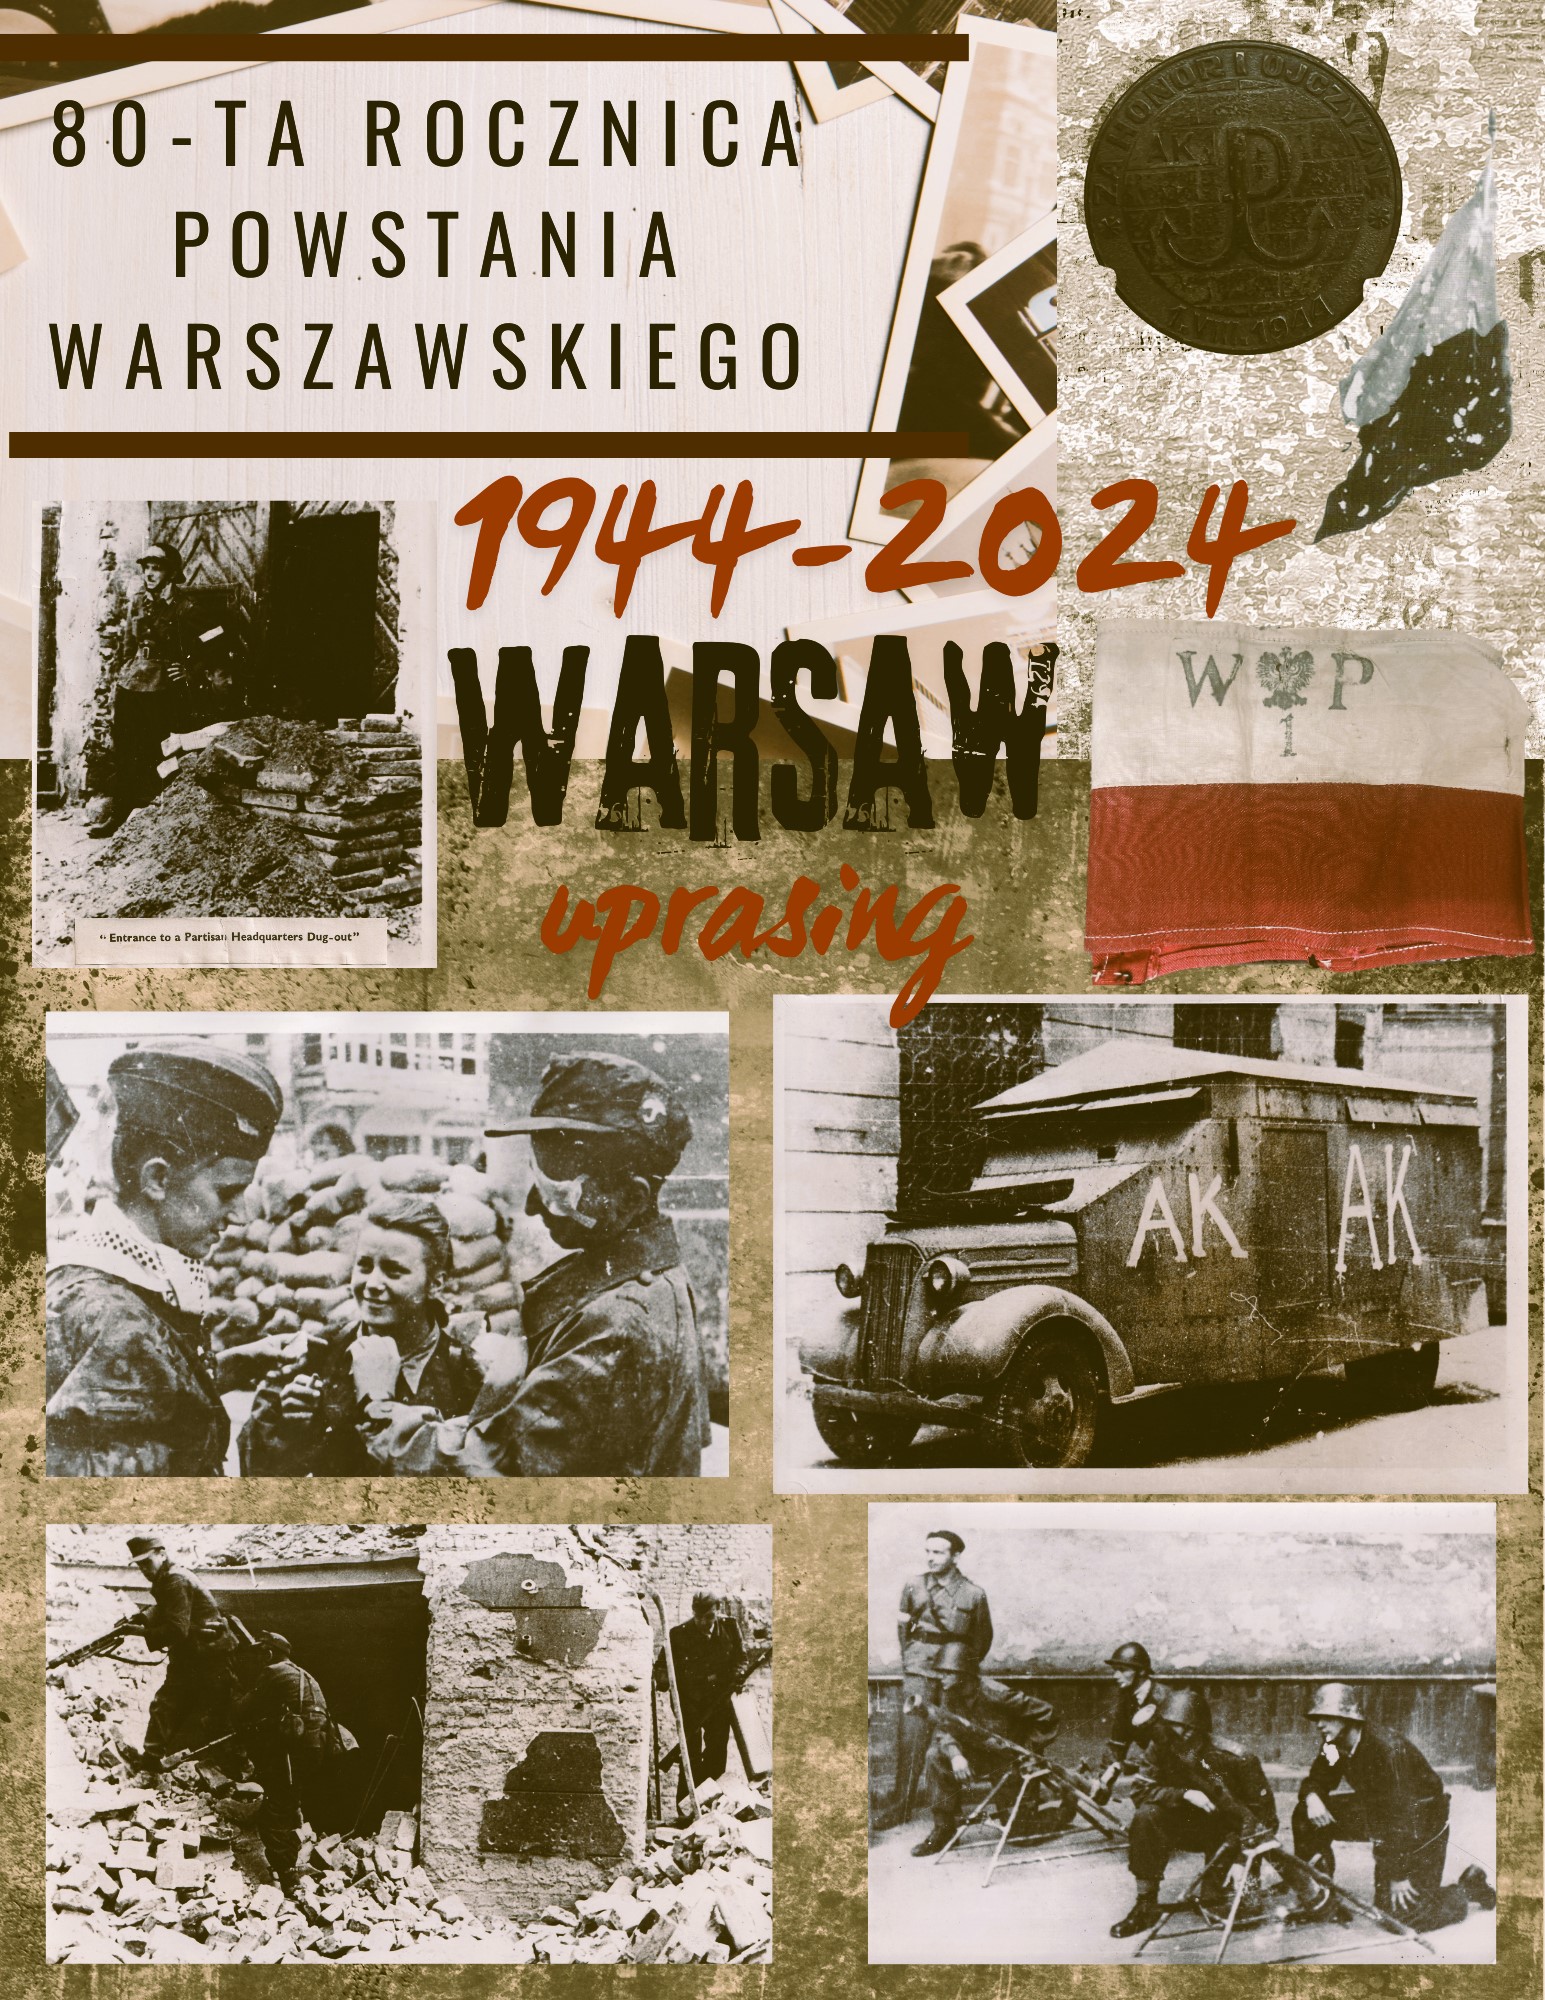 Warsaw Uprisning